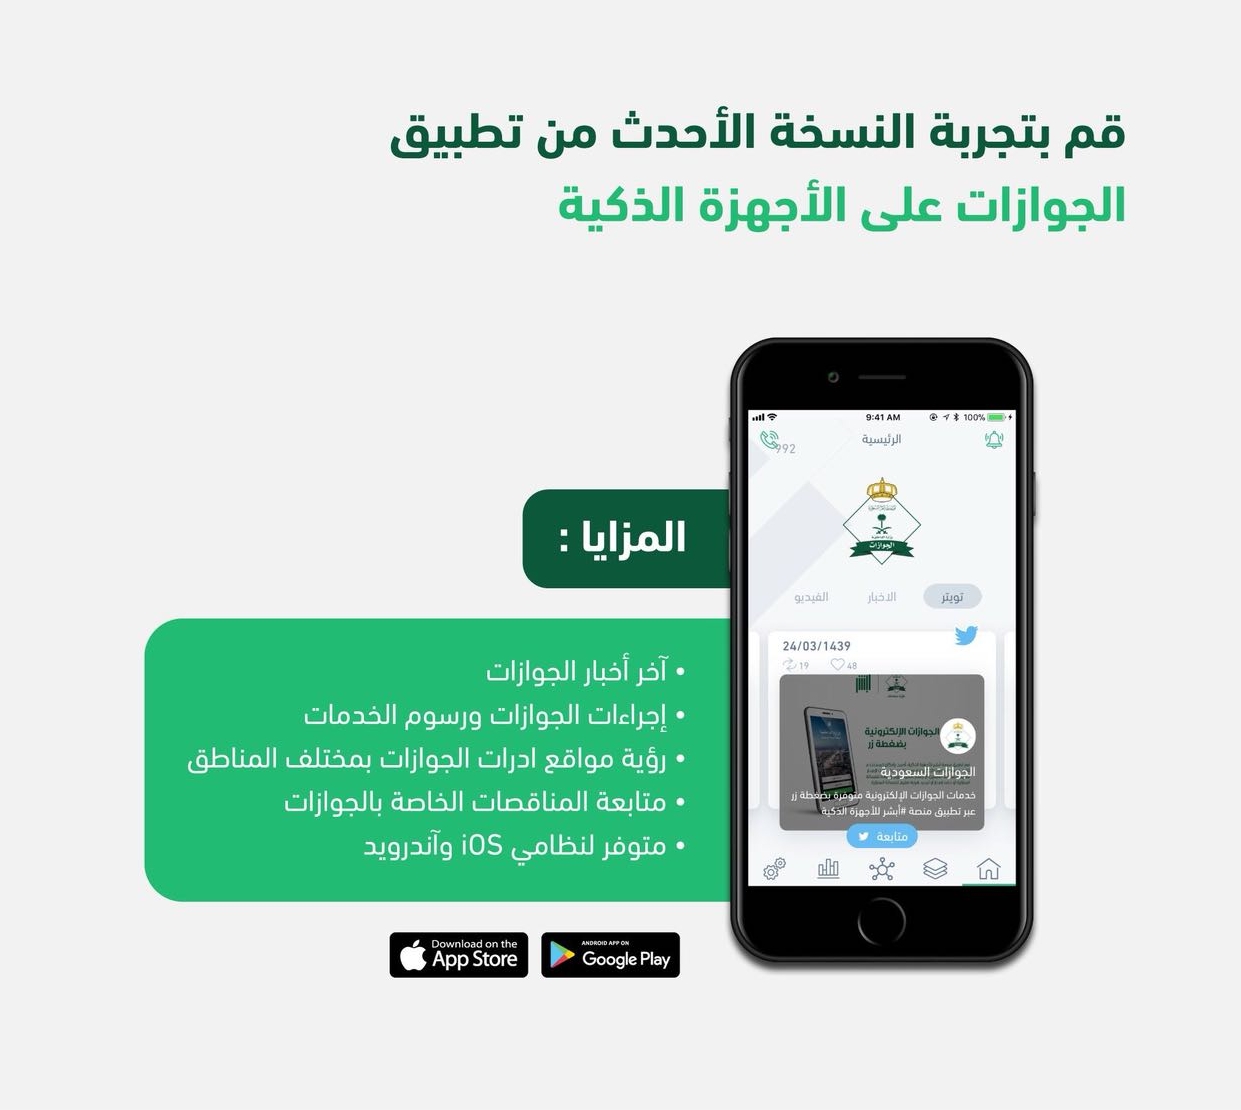 الجوازات: الإصدار الحديث لتطبيق “الجوازات” يدعم اللغتين العربية والإنجليزية